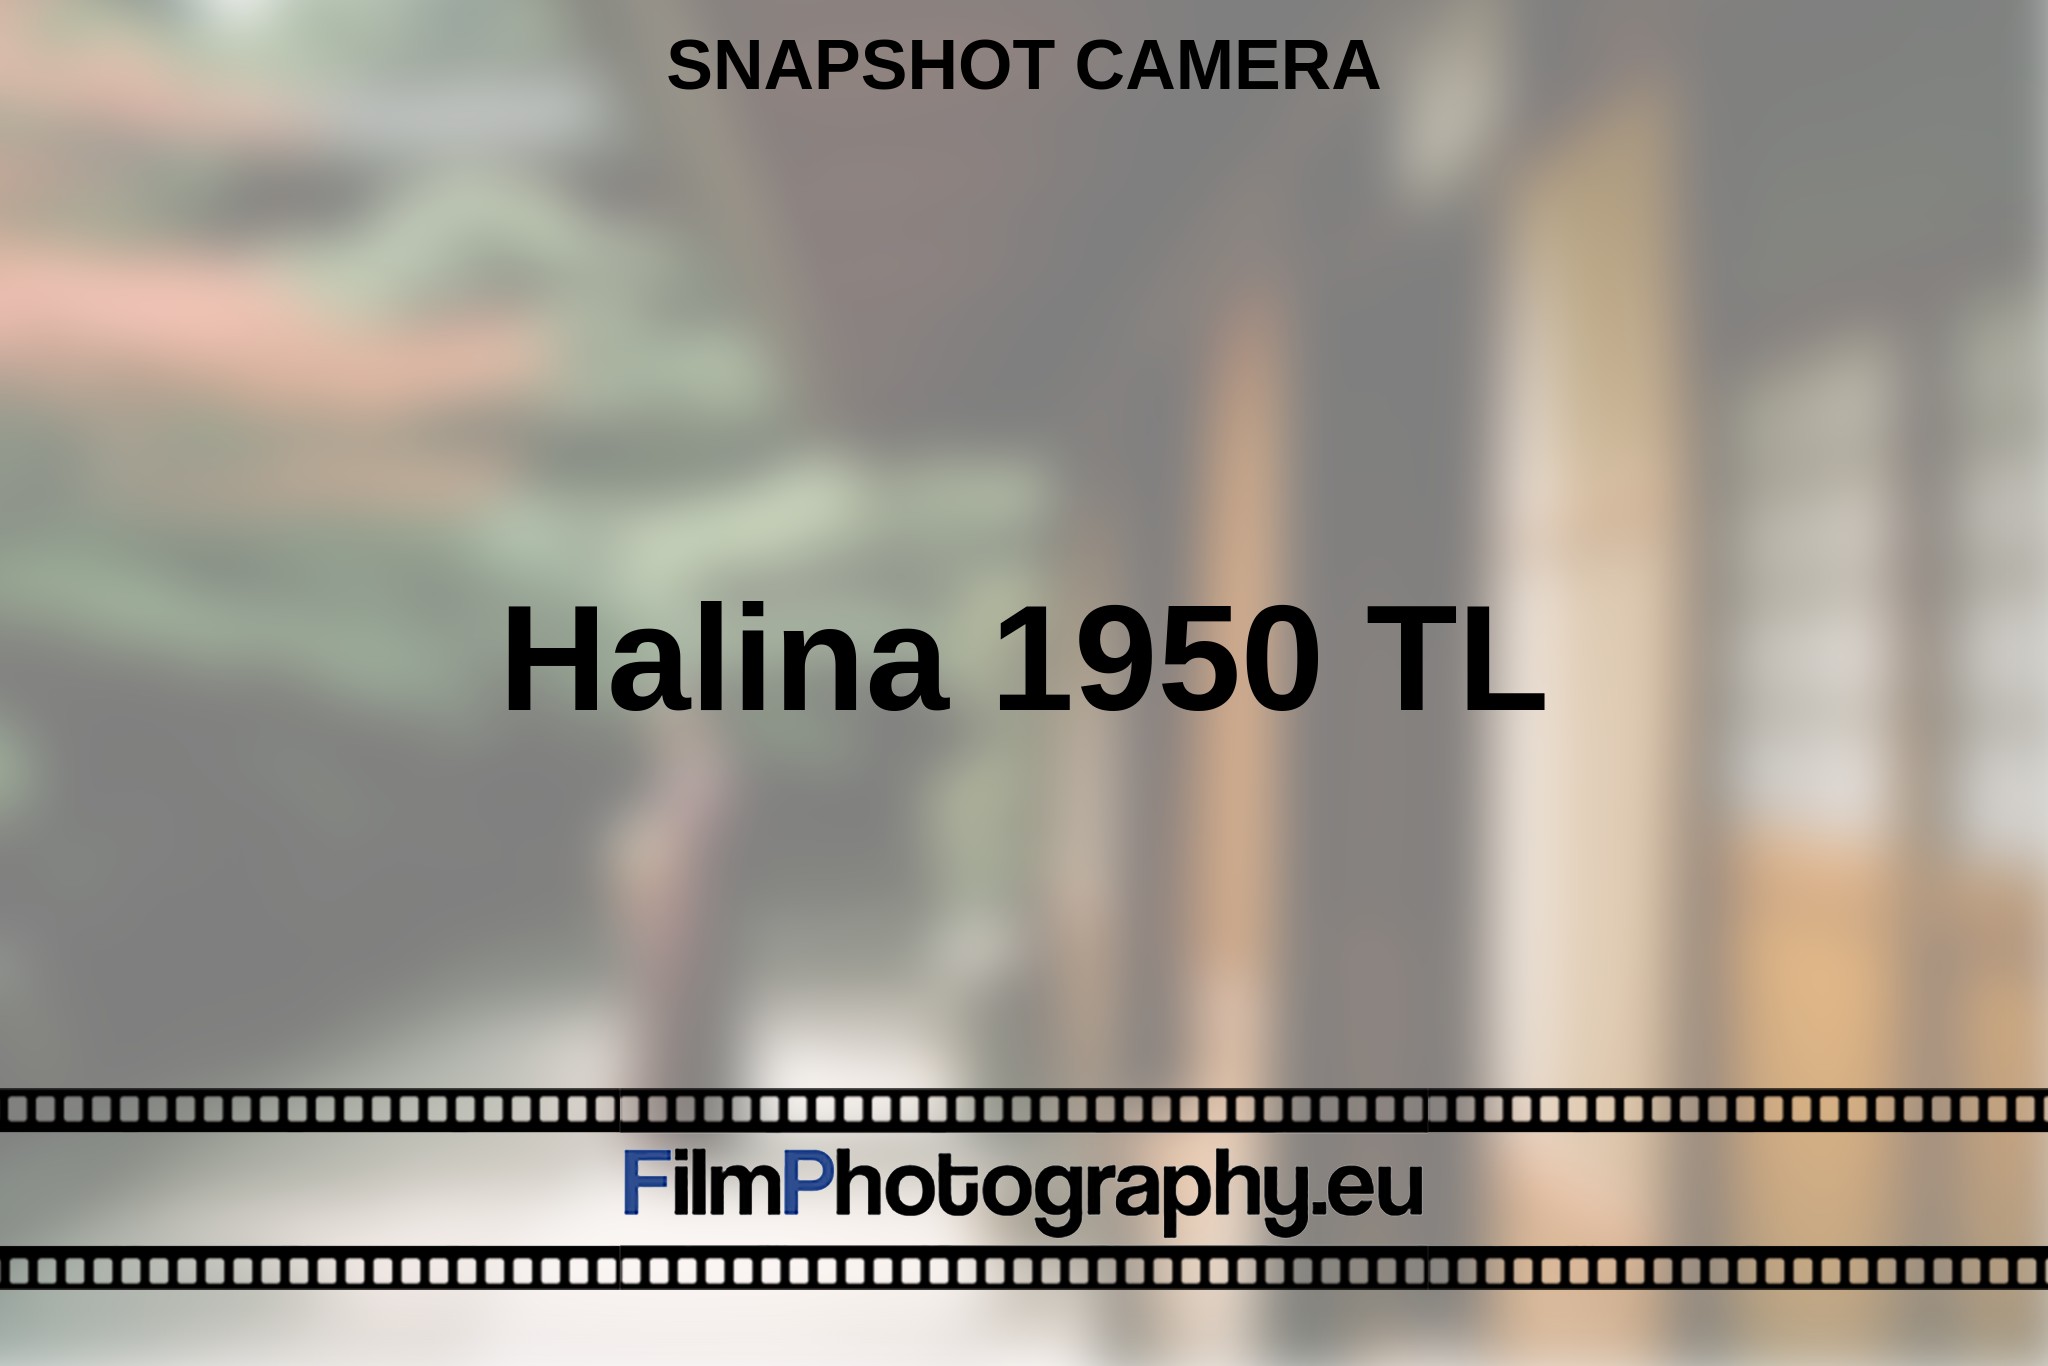 halina-1950-tl-snapshot-camera-en-bnv.jpg